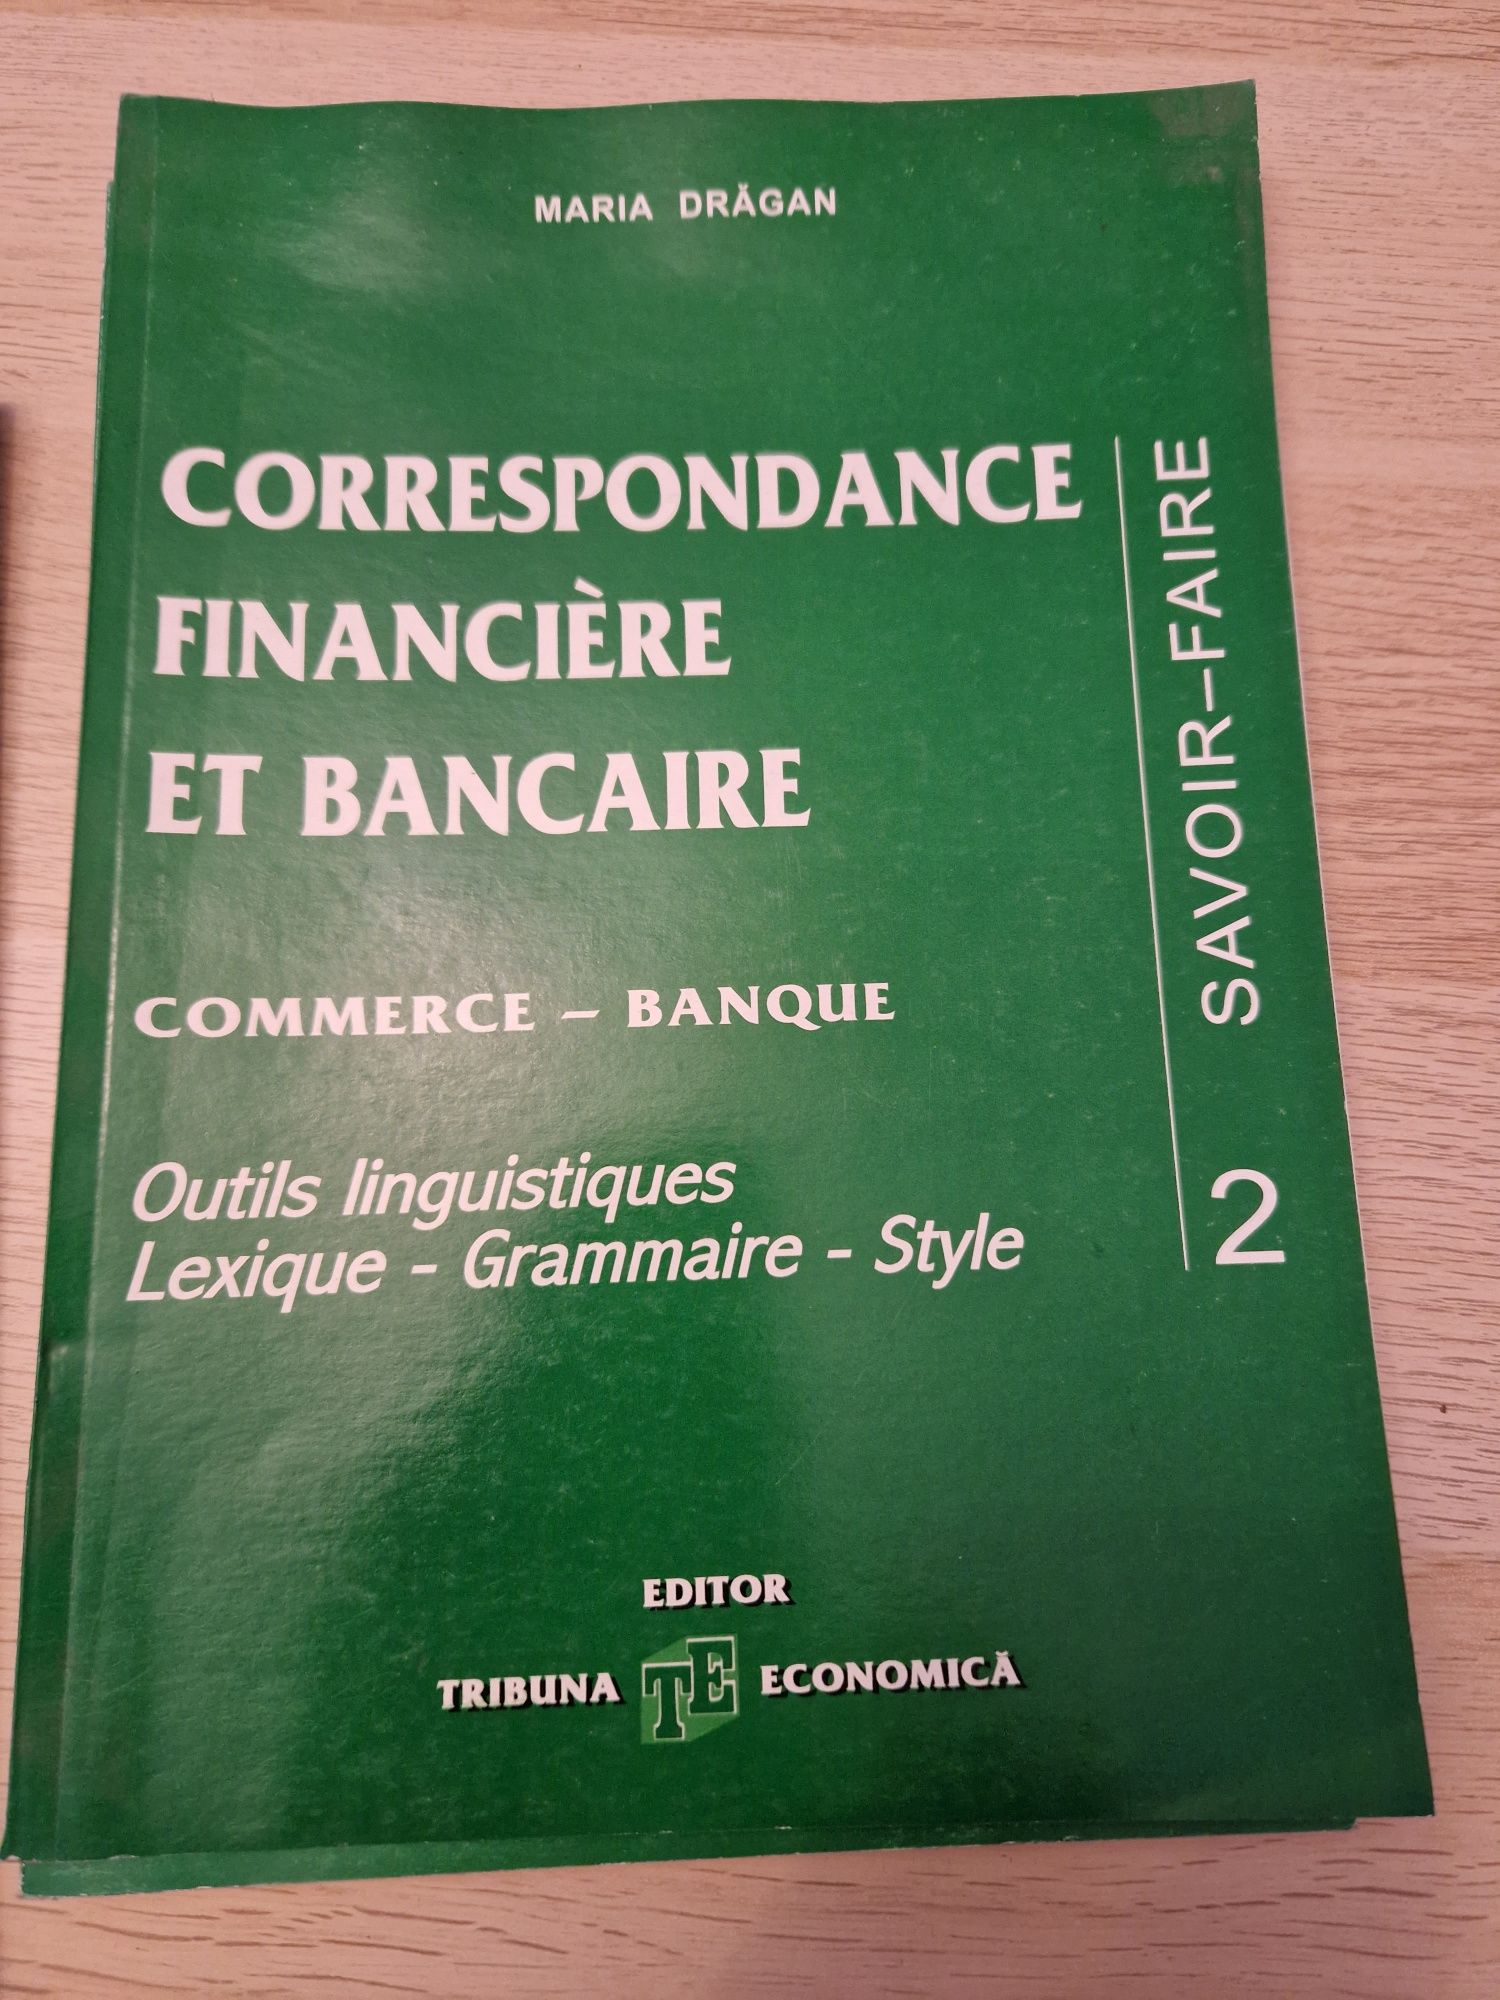 Vând carte -Corespondance Financiere et Bancare vol 1,2,3